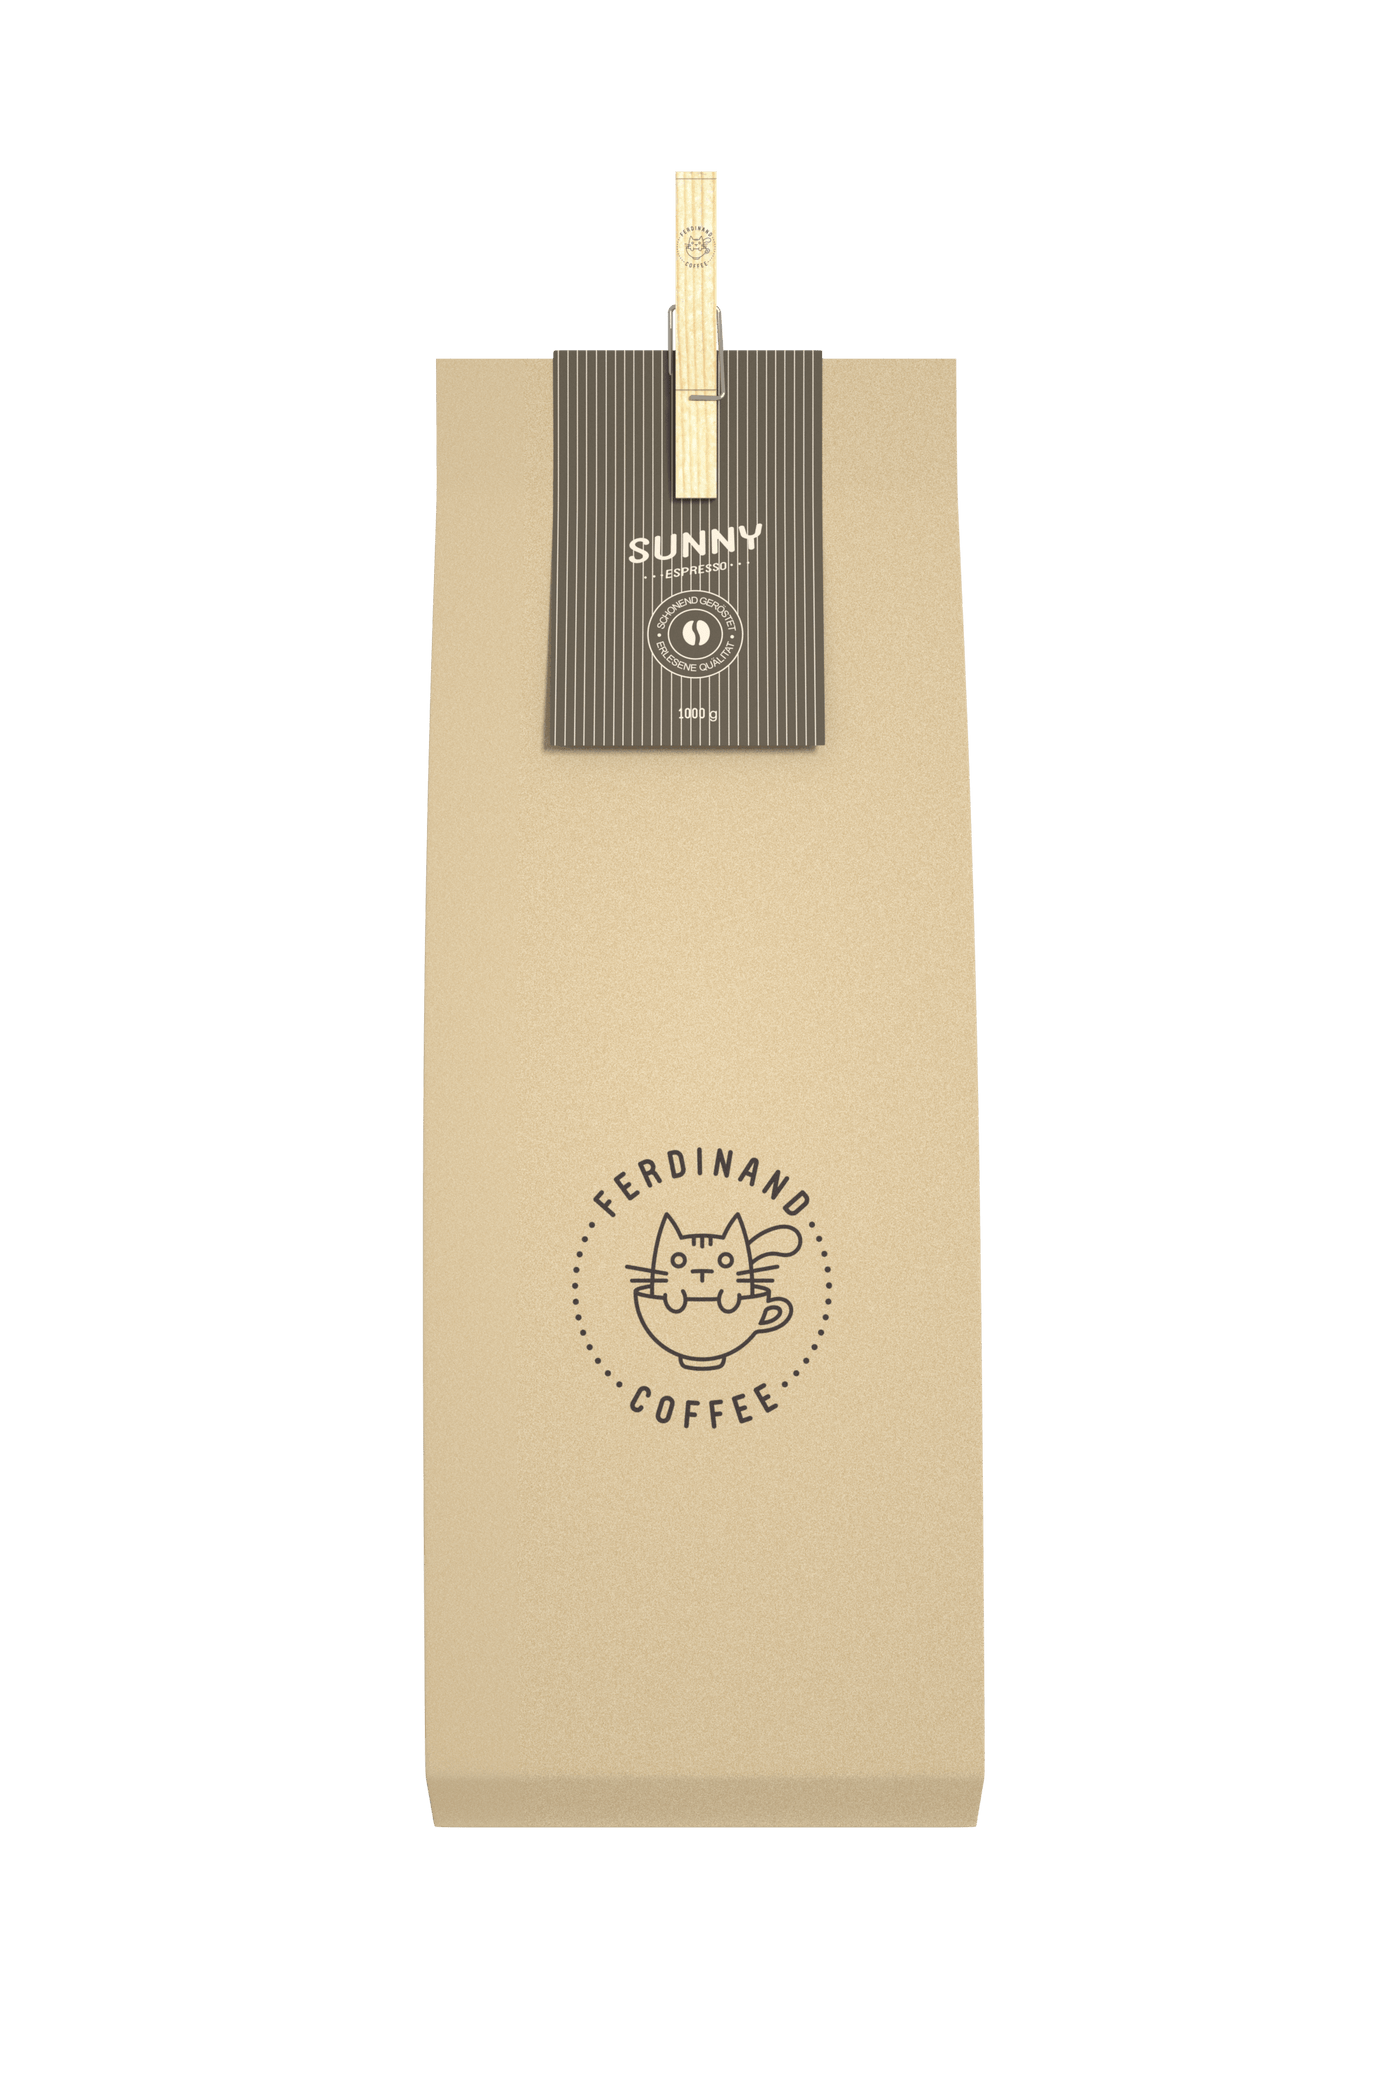 Sunny Espresso / Kaffeebohnen Kaffee Ferdinand-Coffee <br>Umweltfreundlich verpackt, Solides Handwerk 